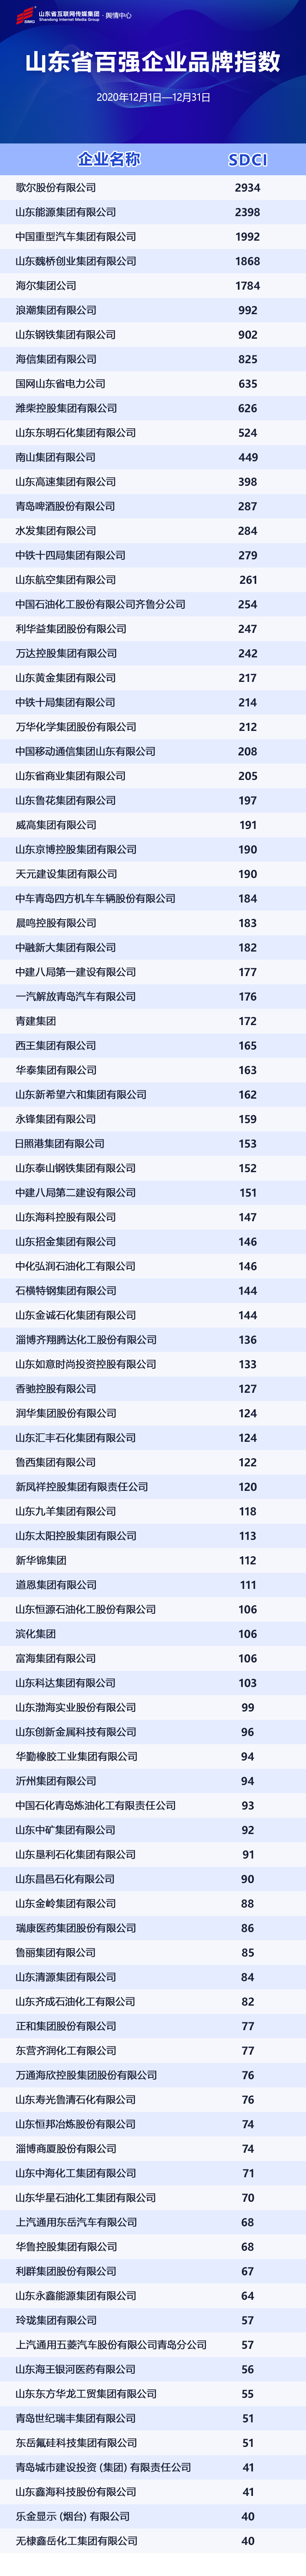 山東省百強企業品牌指數（SDCI）發佈 歌爾、山東能源、中國重汽名列前三